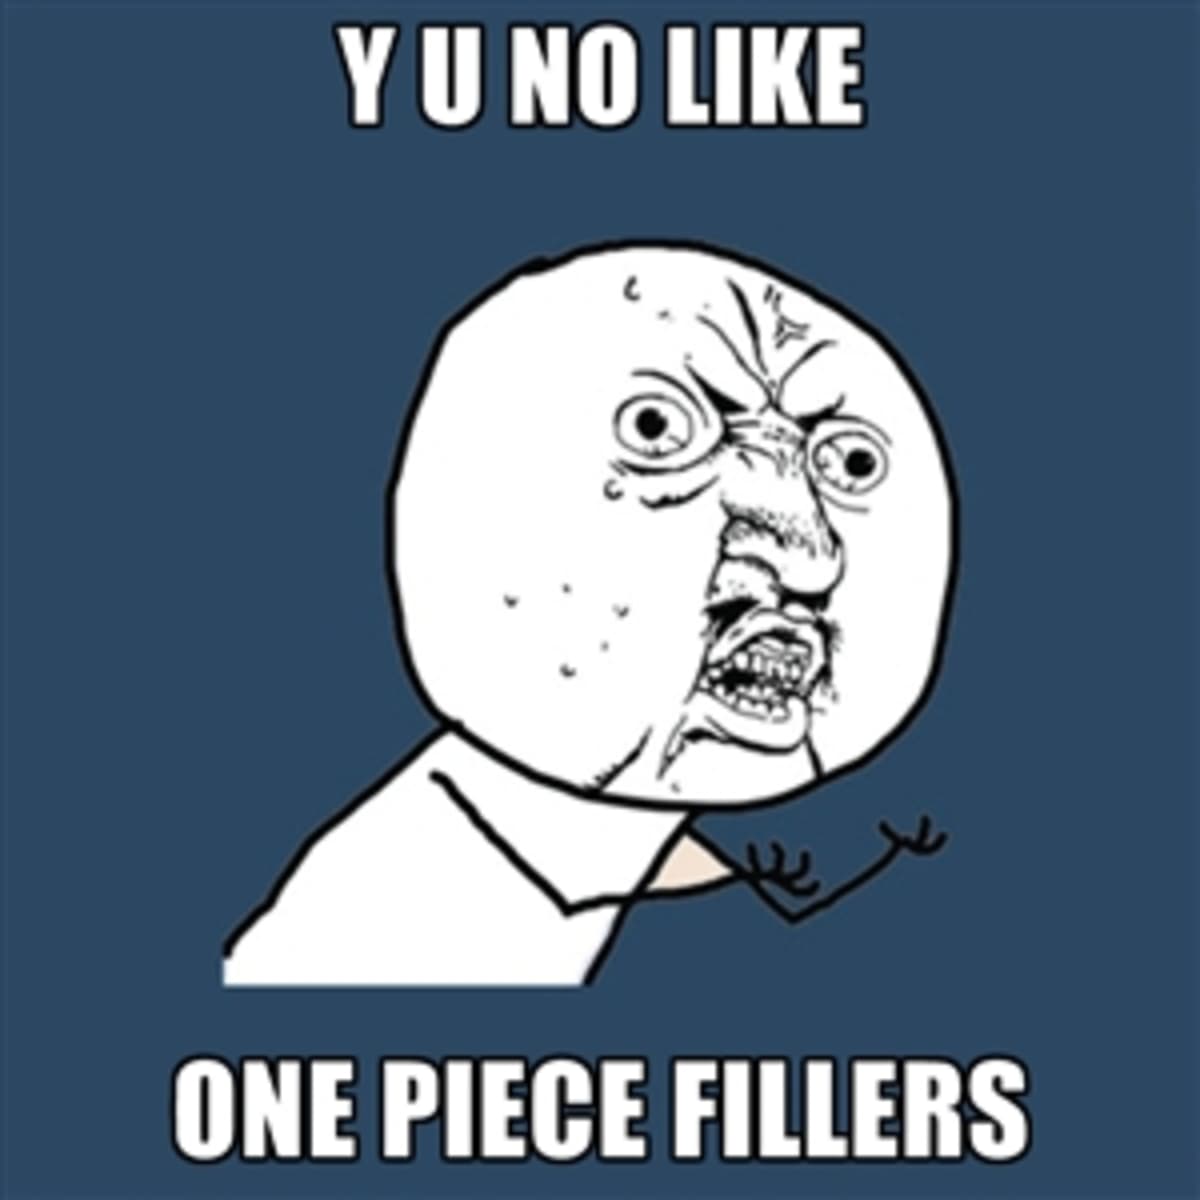 One Piece Filler Guide - One Piece Filler List